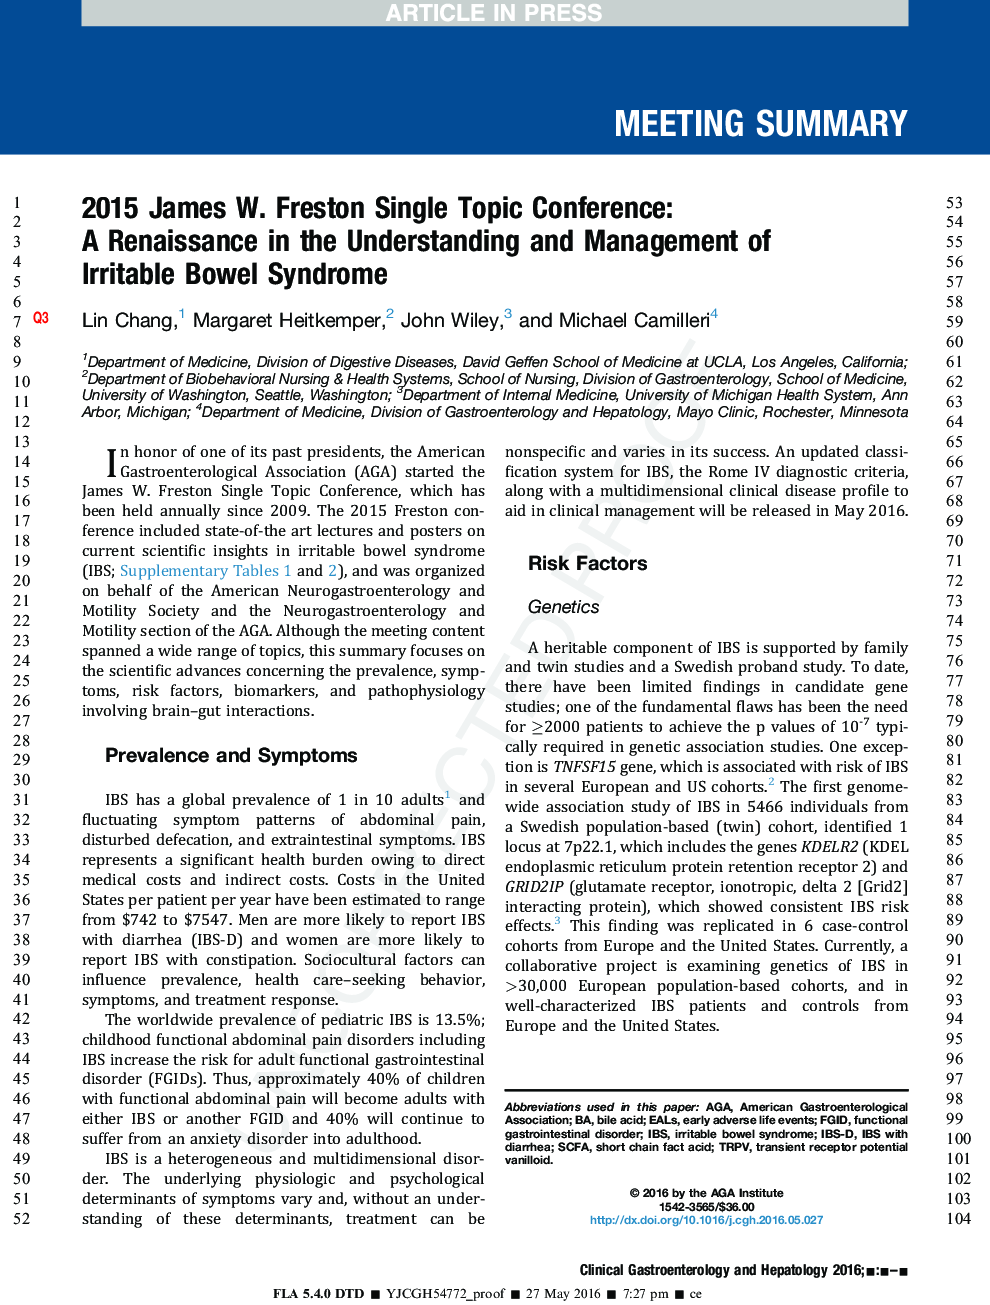 2015 جیمز وات. فستون کنفرانس تنها موضوع: رنسانس در درک و مدیریت سندرم روده تحریک پذیر 